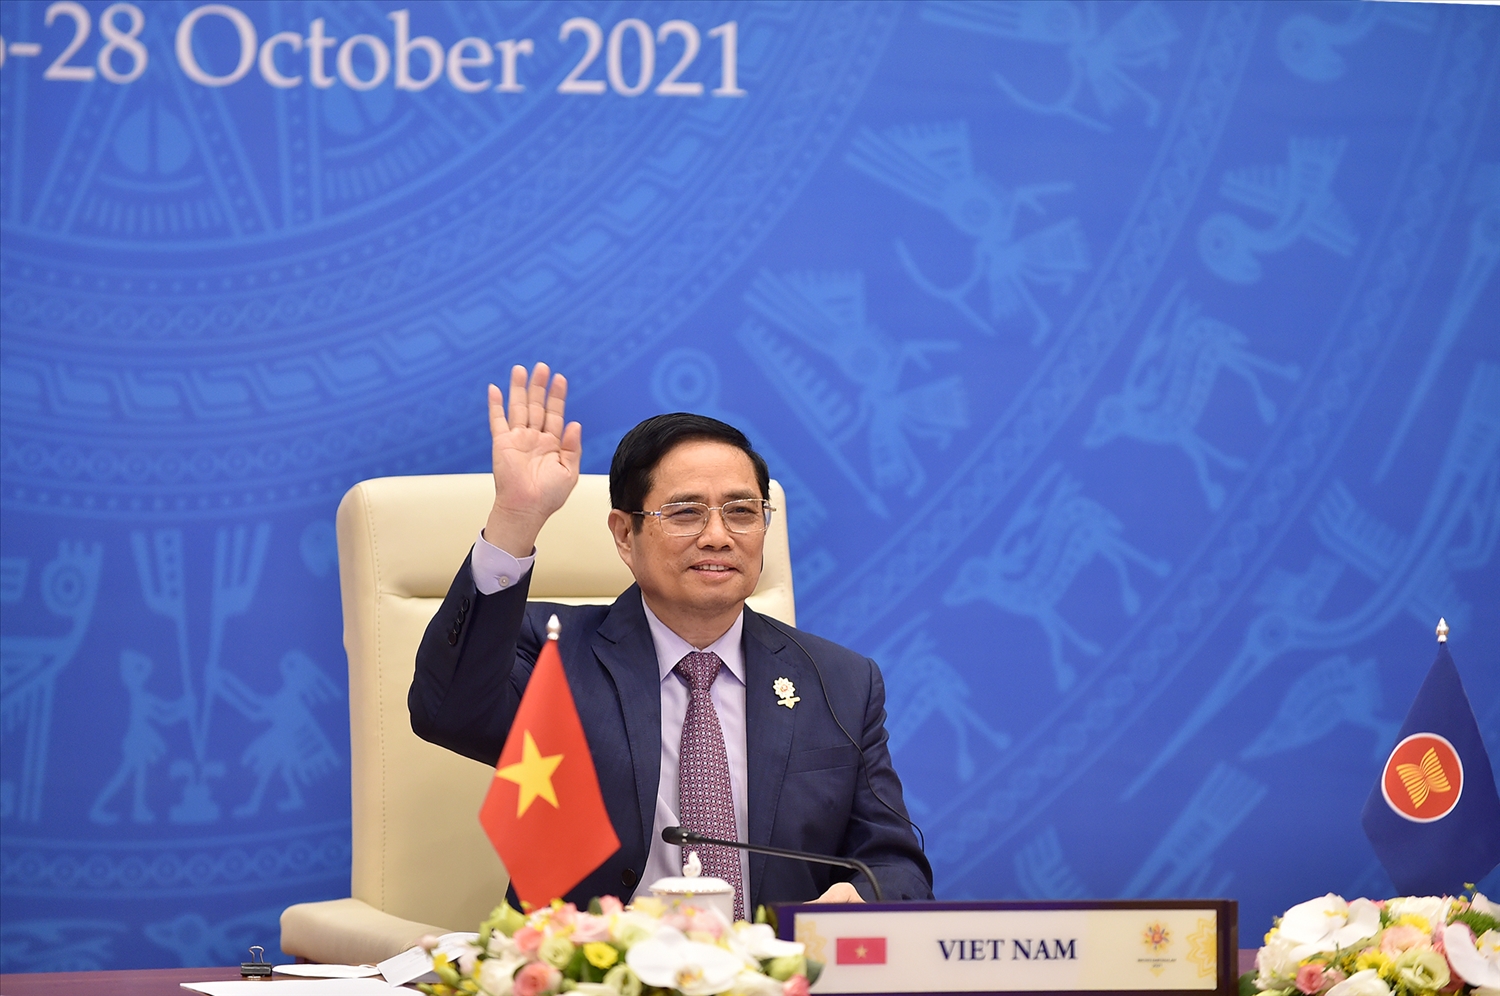 Thủ tướng Chính phủ Phạm Minh Chính tham dự Lễ bế mạc Hội nghị Cấp cao ASEAN lần thứ 38 và 39 và các Hội nghị Cấp cao liên quan. Ảnh: VGP/Nhật Bắc